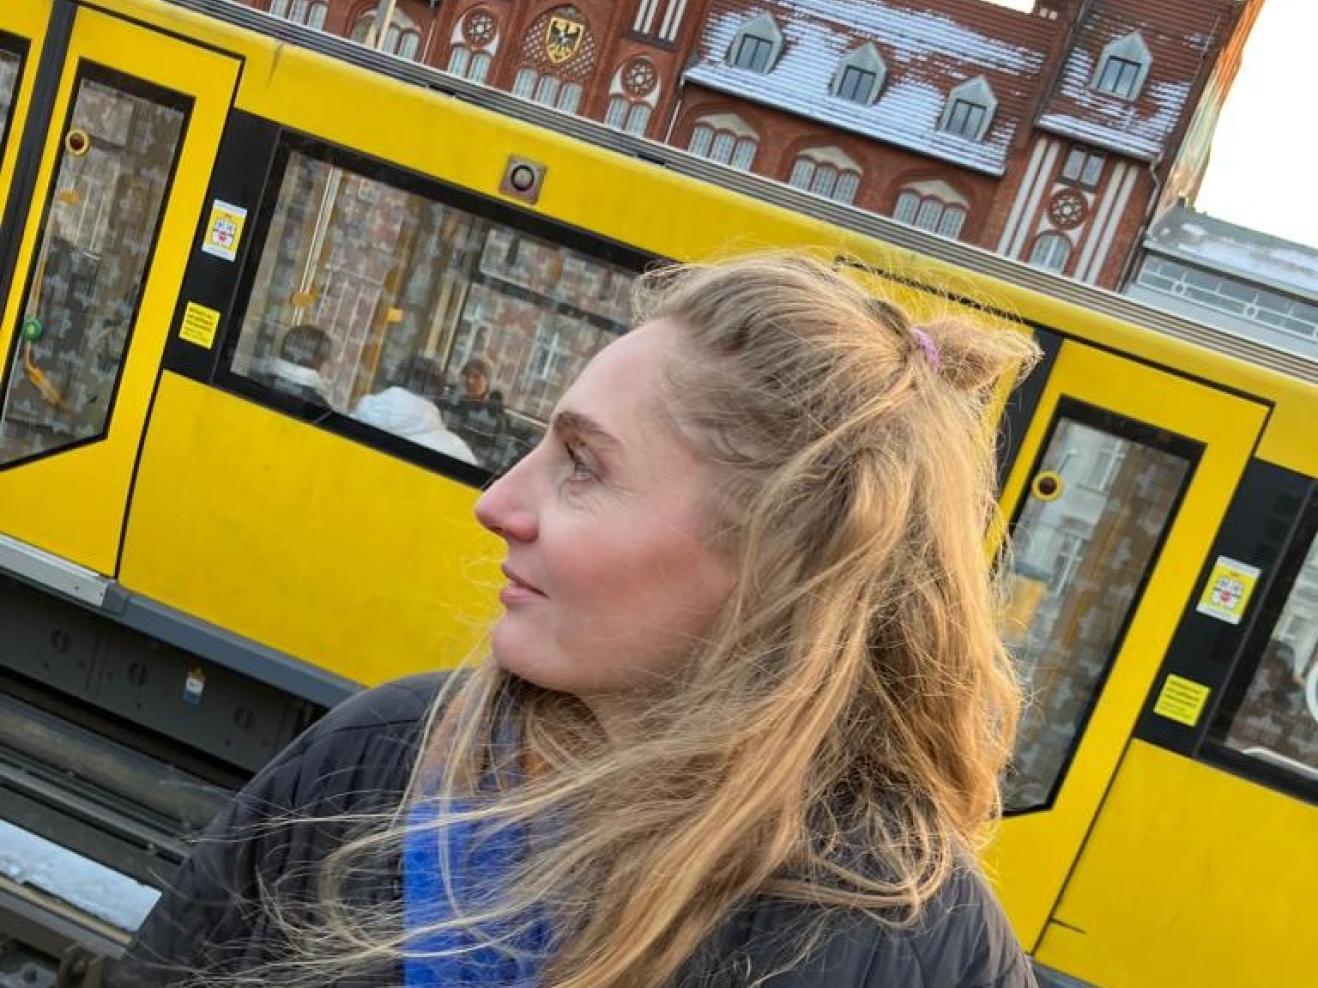 Eine Frau steht im Vordergrund, sie ist bis zur Hüfte zu sehen, trägt einen schwarzen Daunenmantel und hat lange, rotblonde Haare. Sie blickt nach links aus dem Bild. Hinter ihr ist eine gelbe Straßenbahn zu sehen, dahinter im oberen Teil des Fotos ist ein Teil des Gebäudes Altes Postamt in Berlin-Kreuzberg zu sehen.